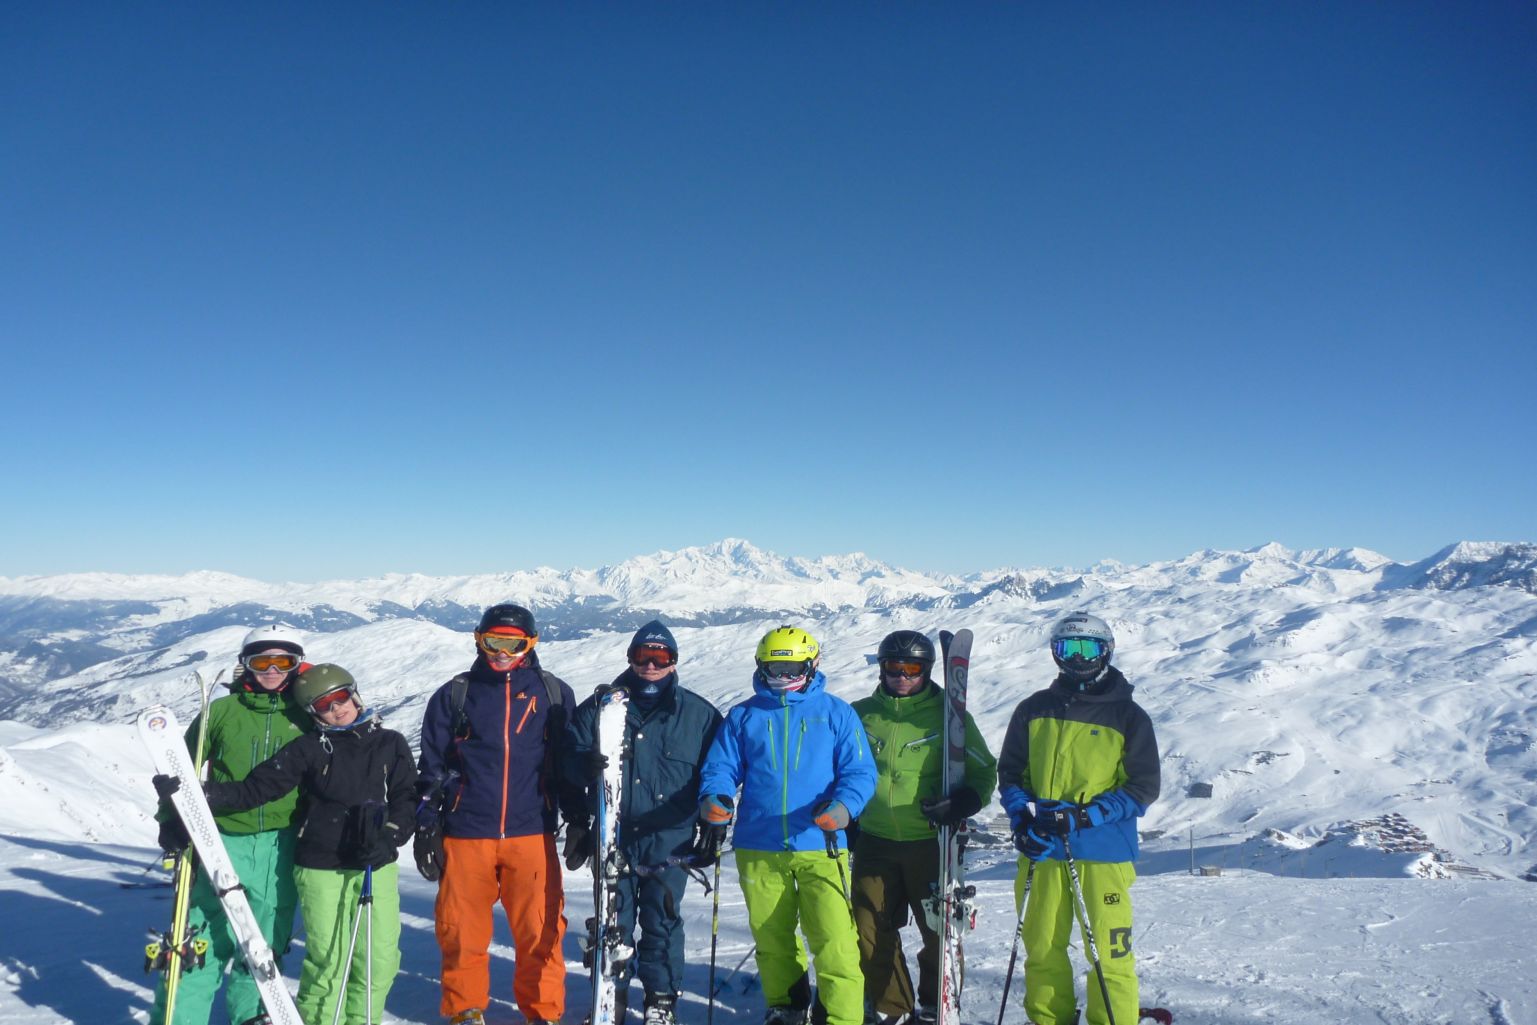 Small group of skiers in Meribel